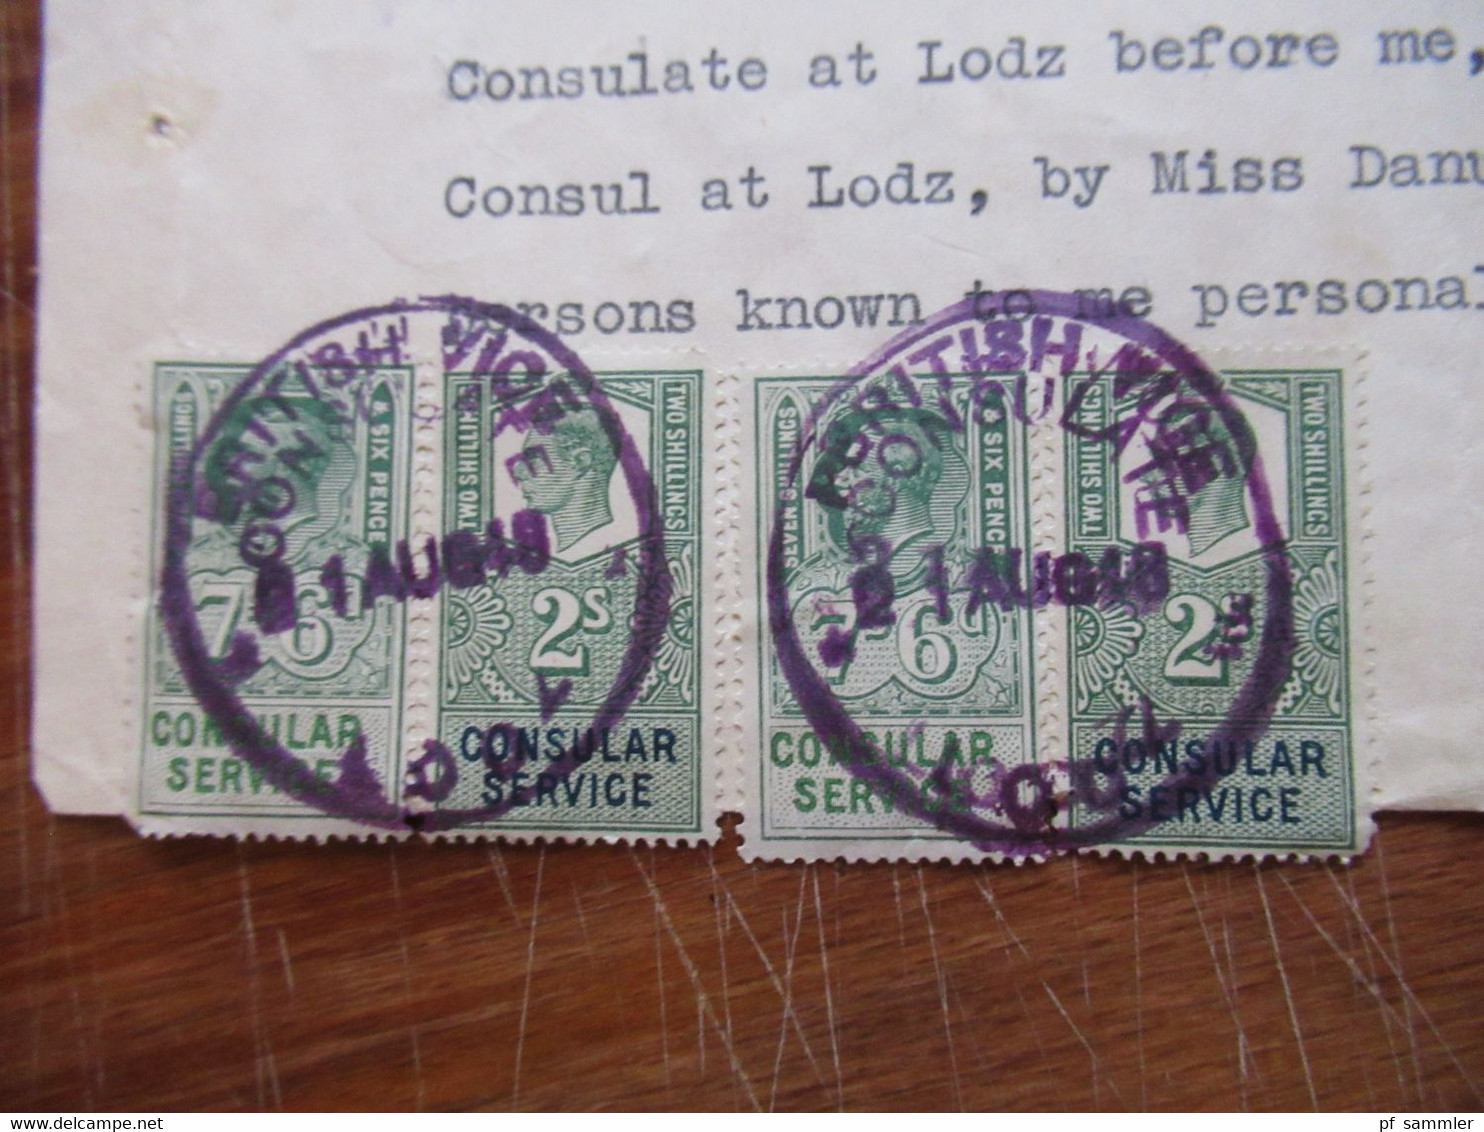 1948 Dokument Mit Fiskalmarken / Revenues Consular Service British Vice Consulate Lodz Erbausschlagung - Briefe U. Dokumente